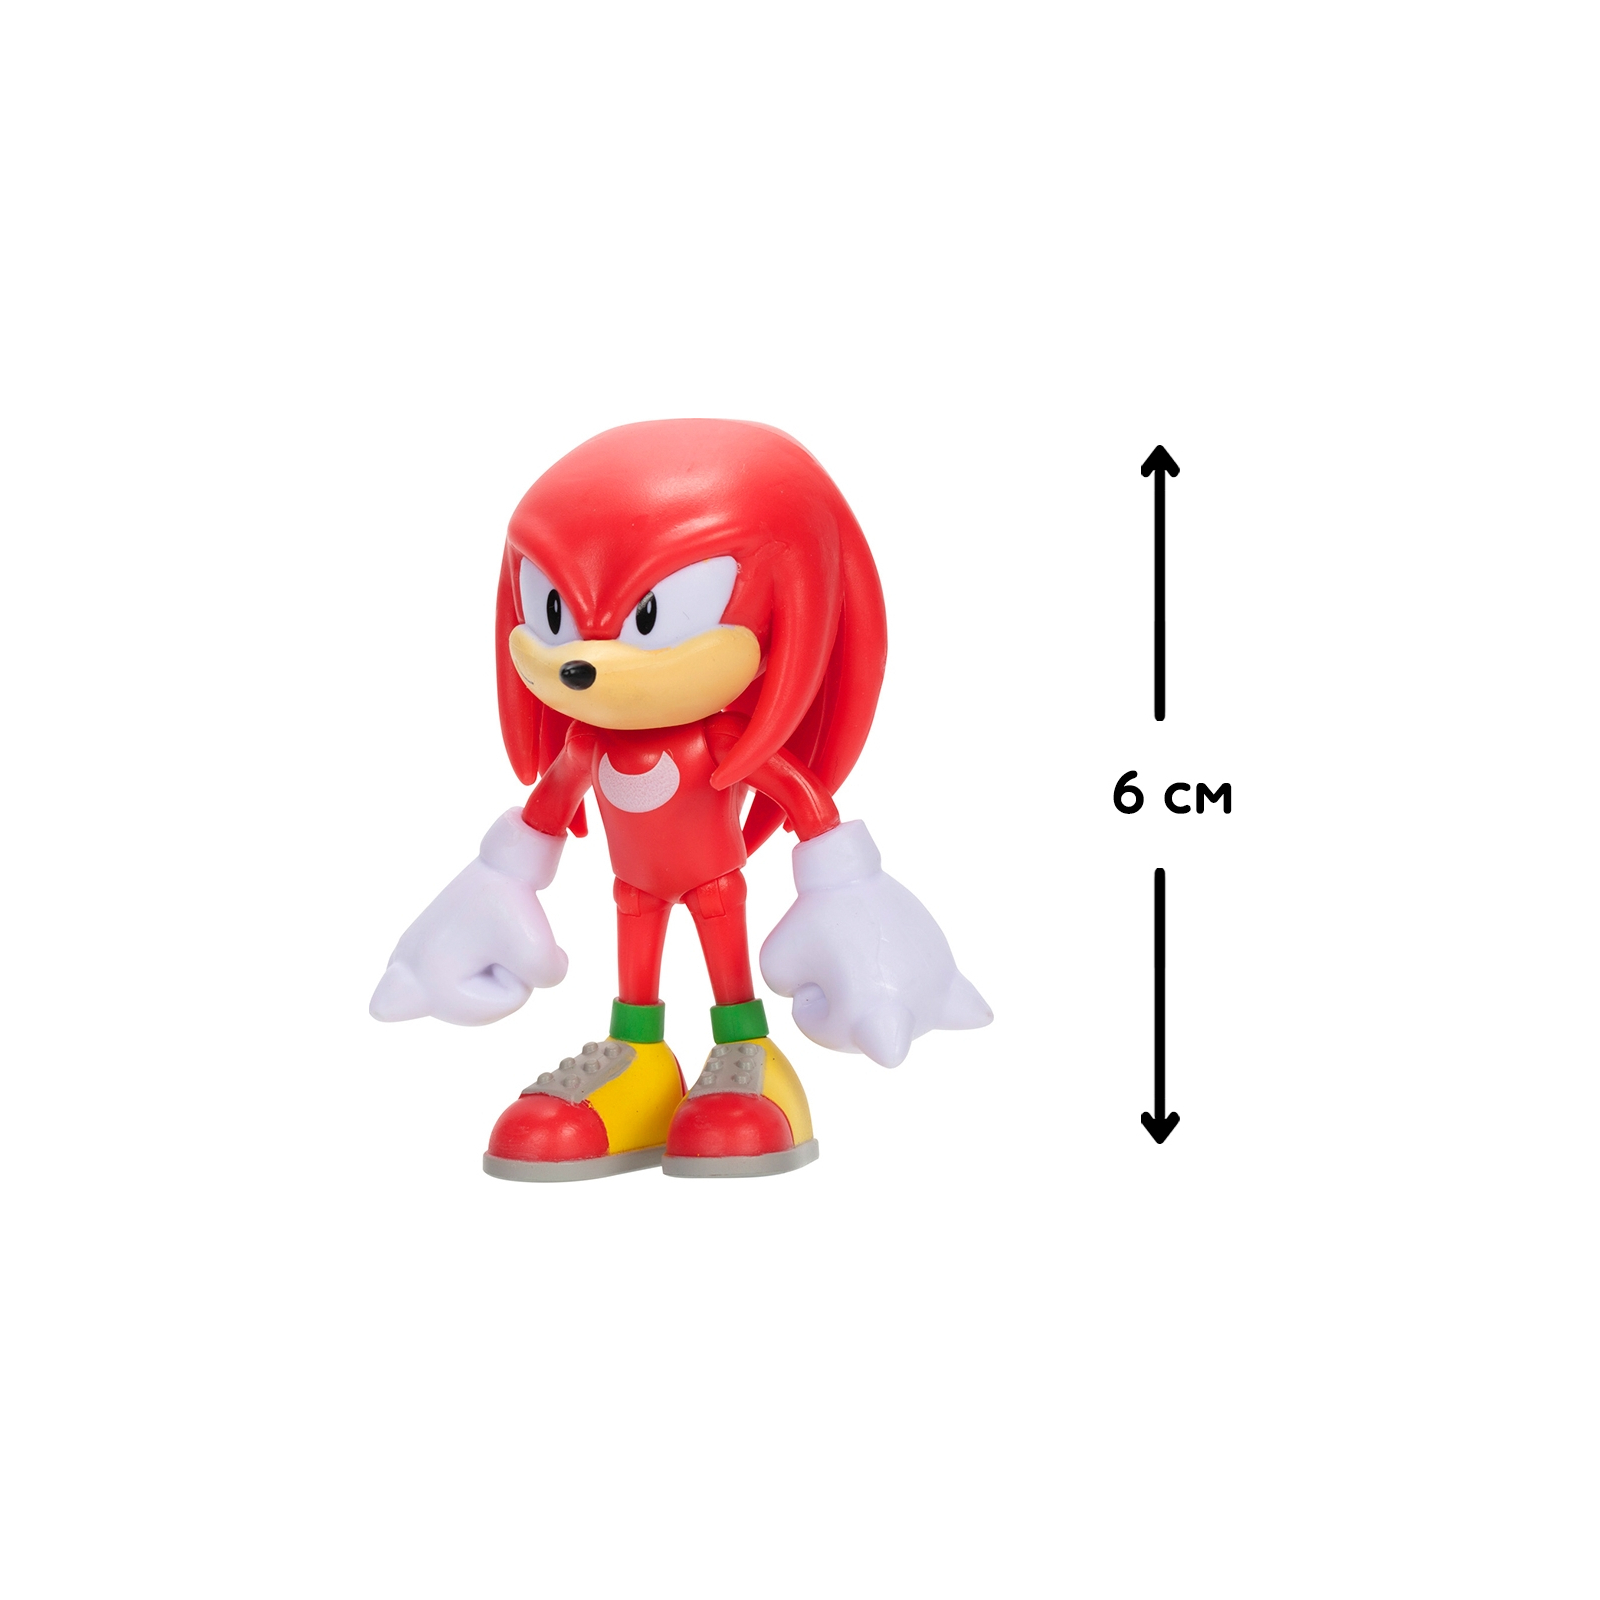 Фигурка Sonic the Hedgehog с артикуляцией - Классический Наклз 6 см (41436i) изображение 5